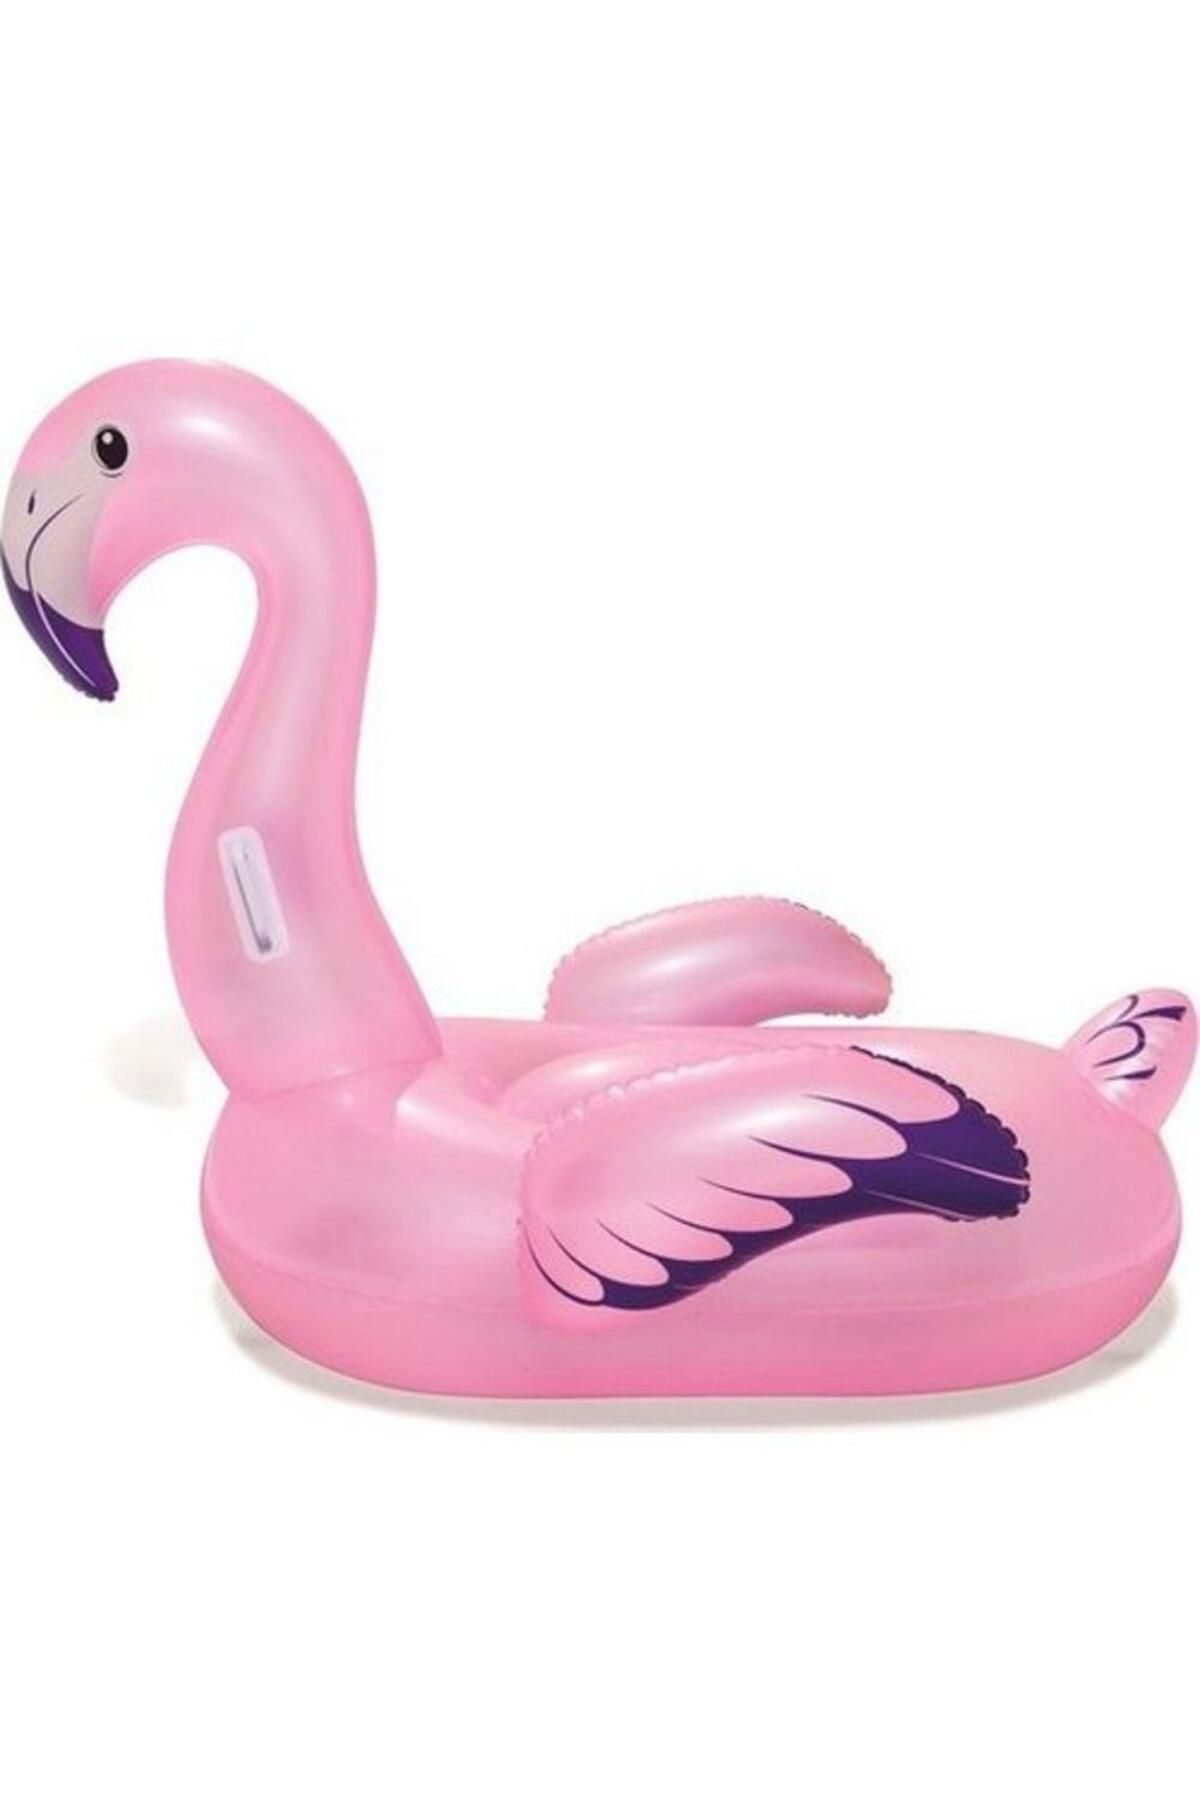 Genel Markalar Akdenizpos  Gr01 Flamingo Binici 127X127 Cm  - 41122 (Yeni)